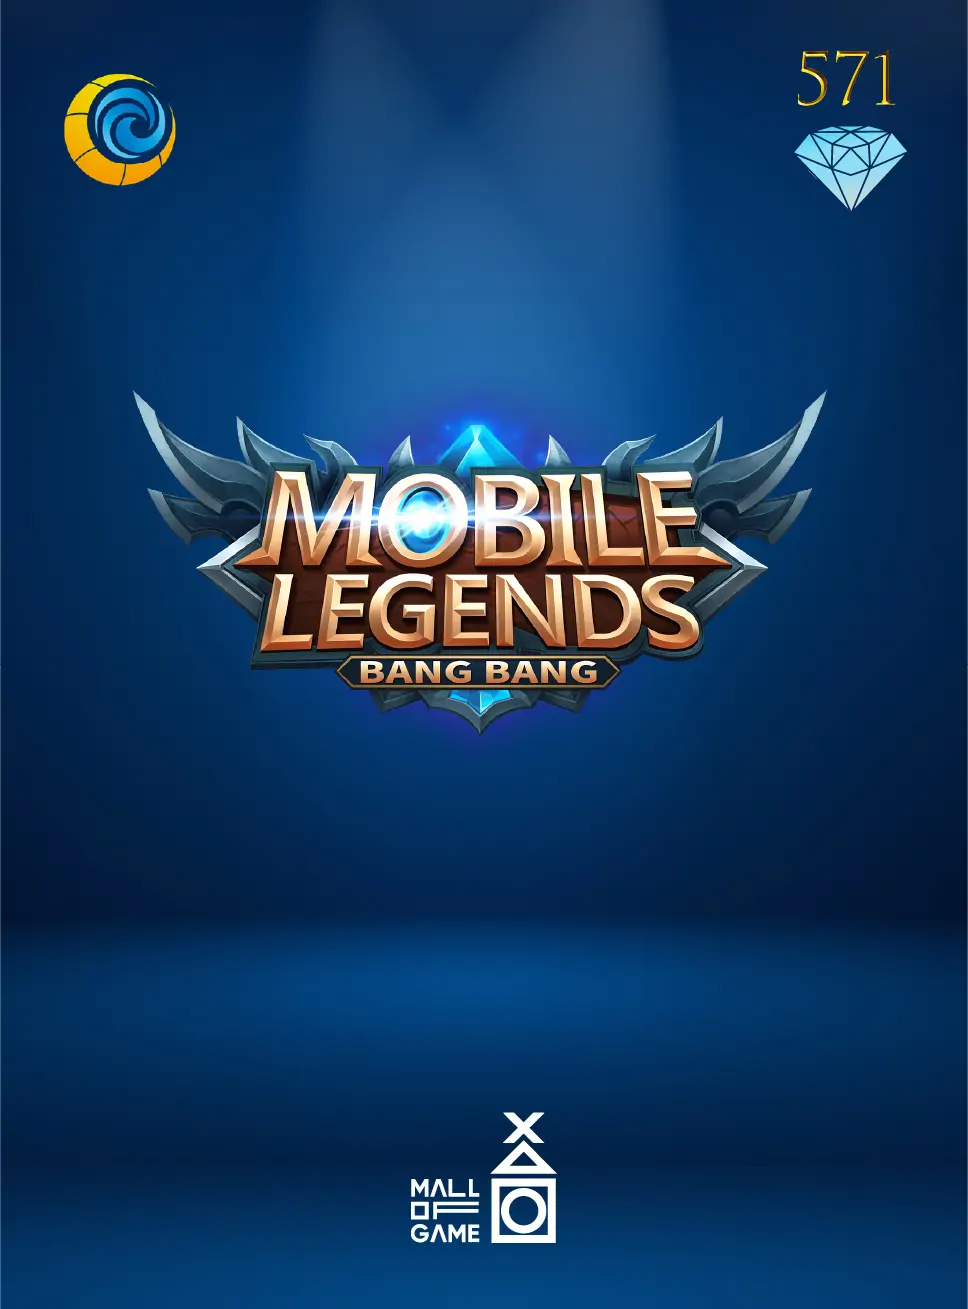 Mobile Legends 571 Diamond